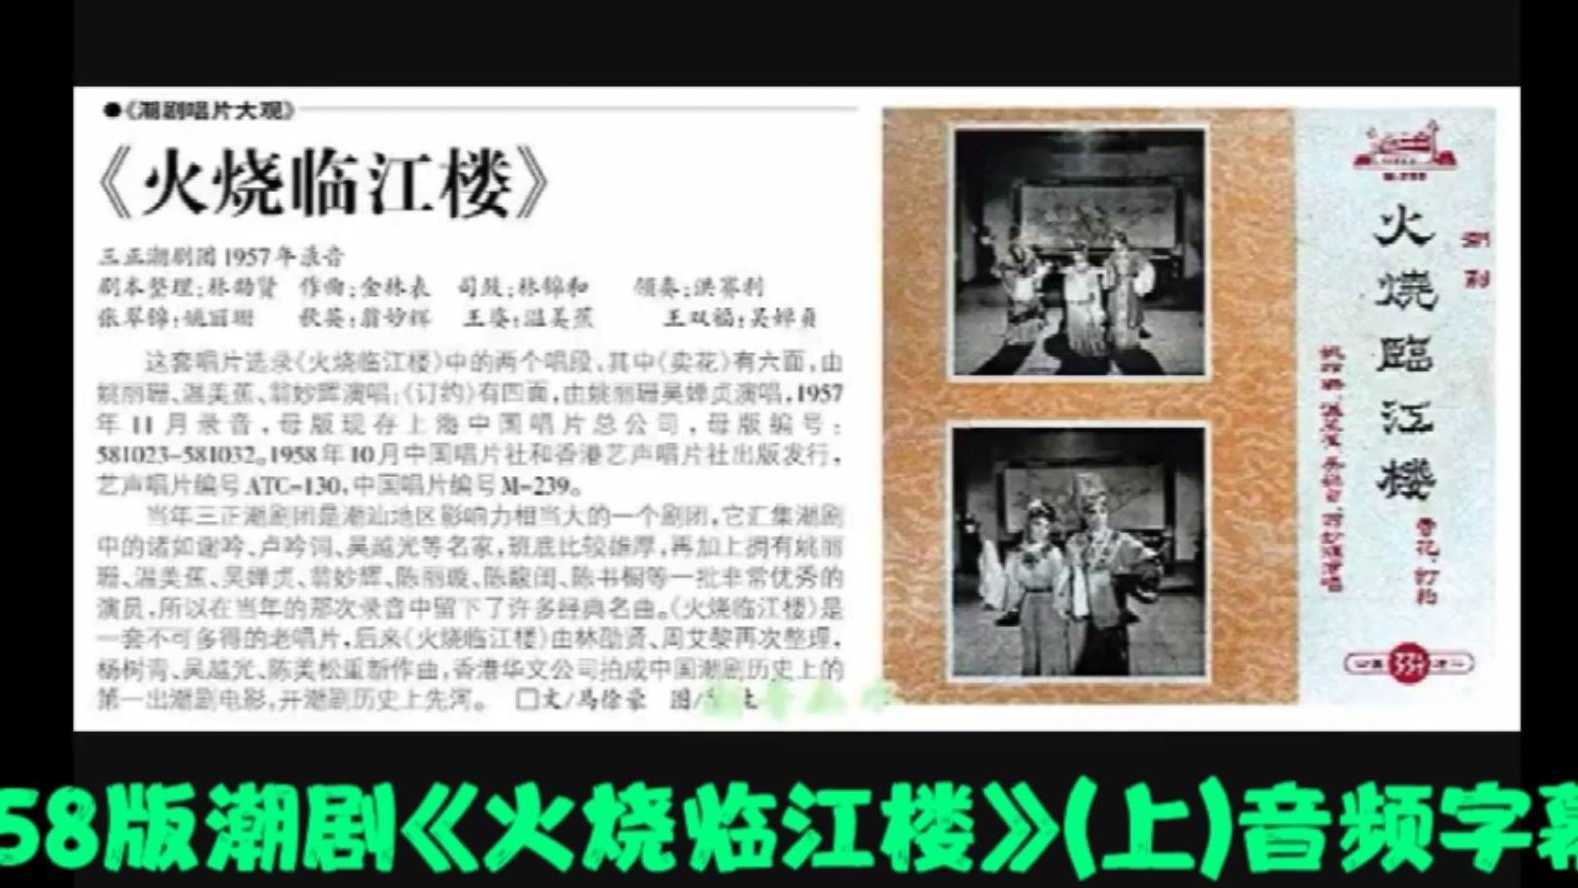 1958版潮剧《火烧临江楼》音频字幕（上）